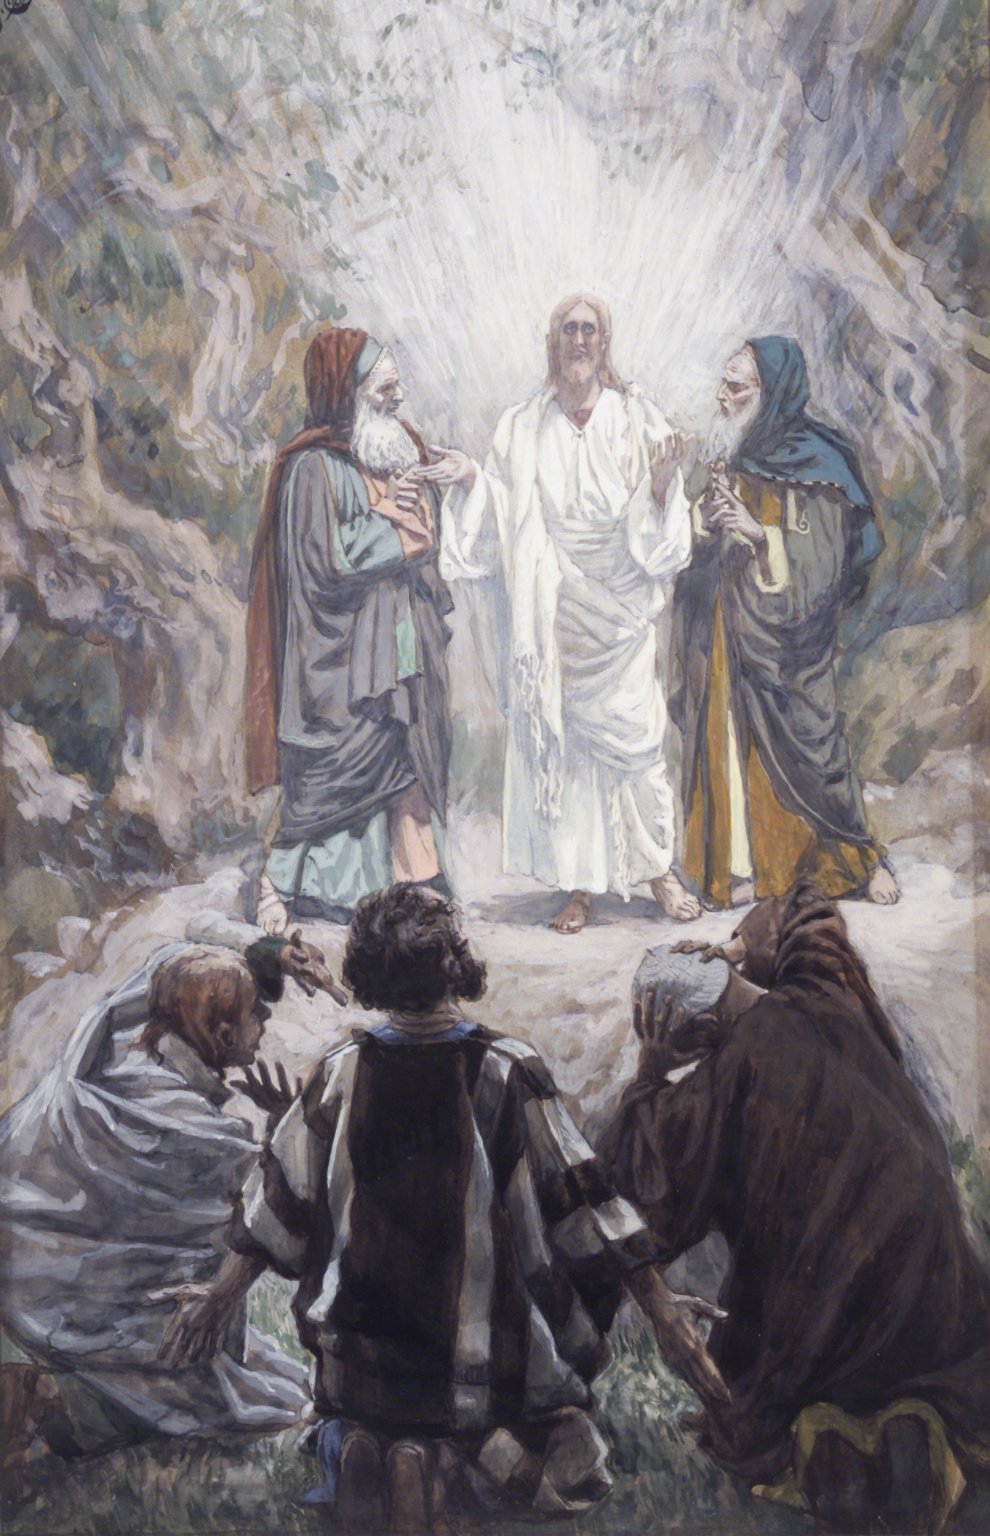 Ngày 06/08: Chúa Giêsu Hiển Dung năm A - Đến với Chúa (Mt 17,1-9)